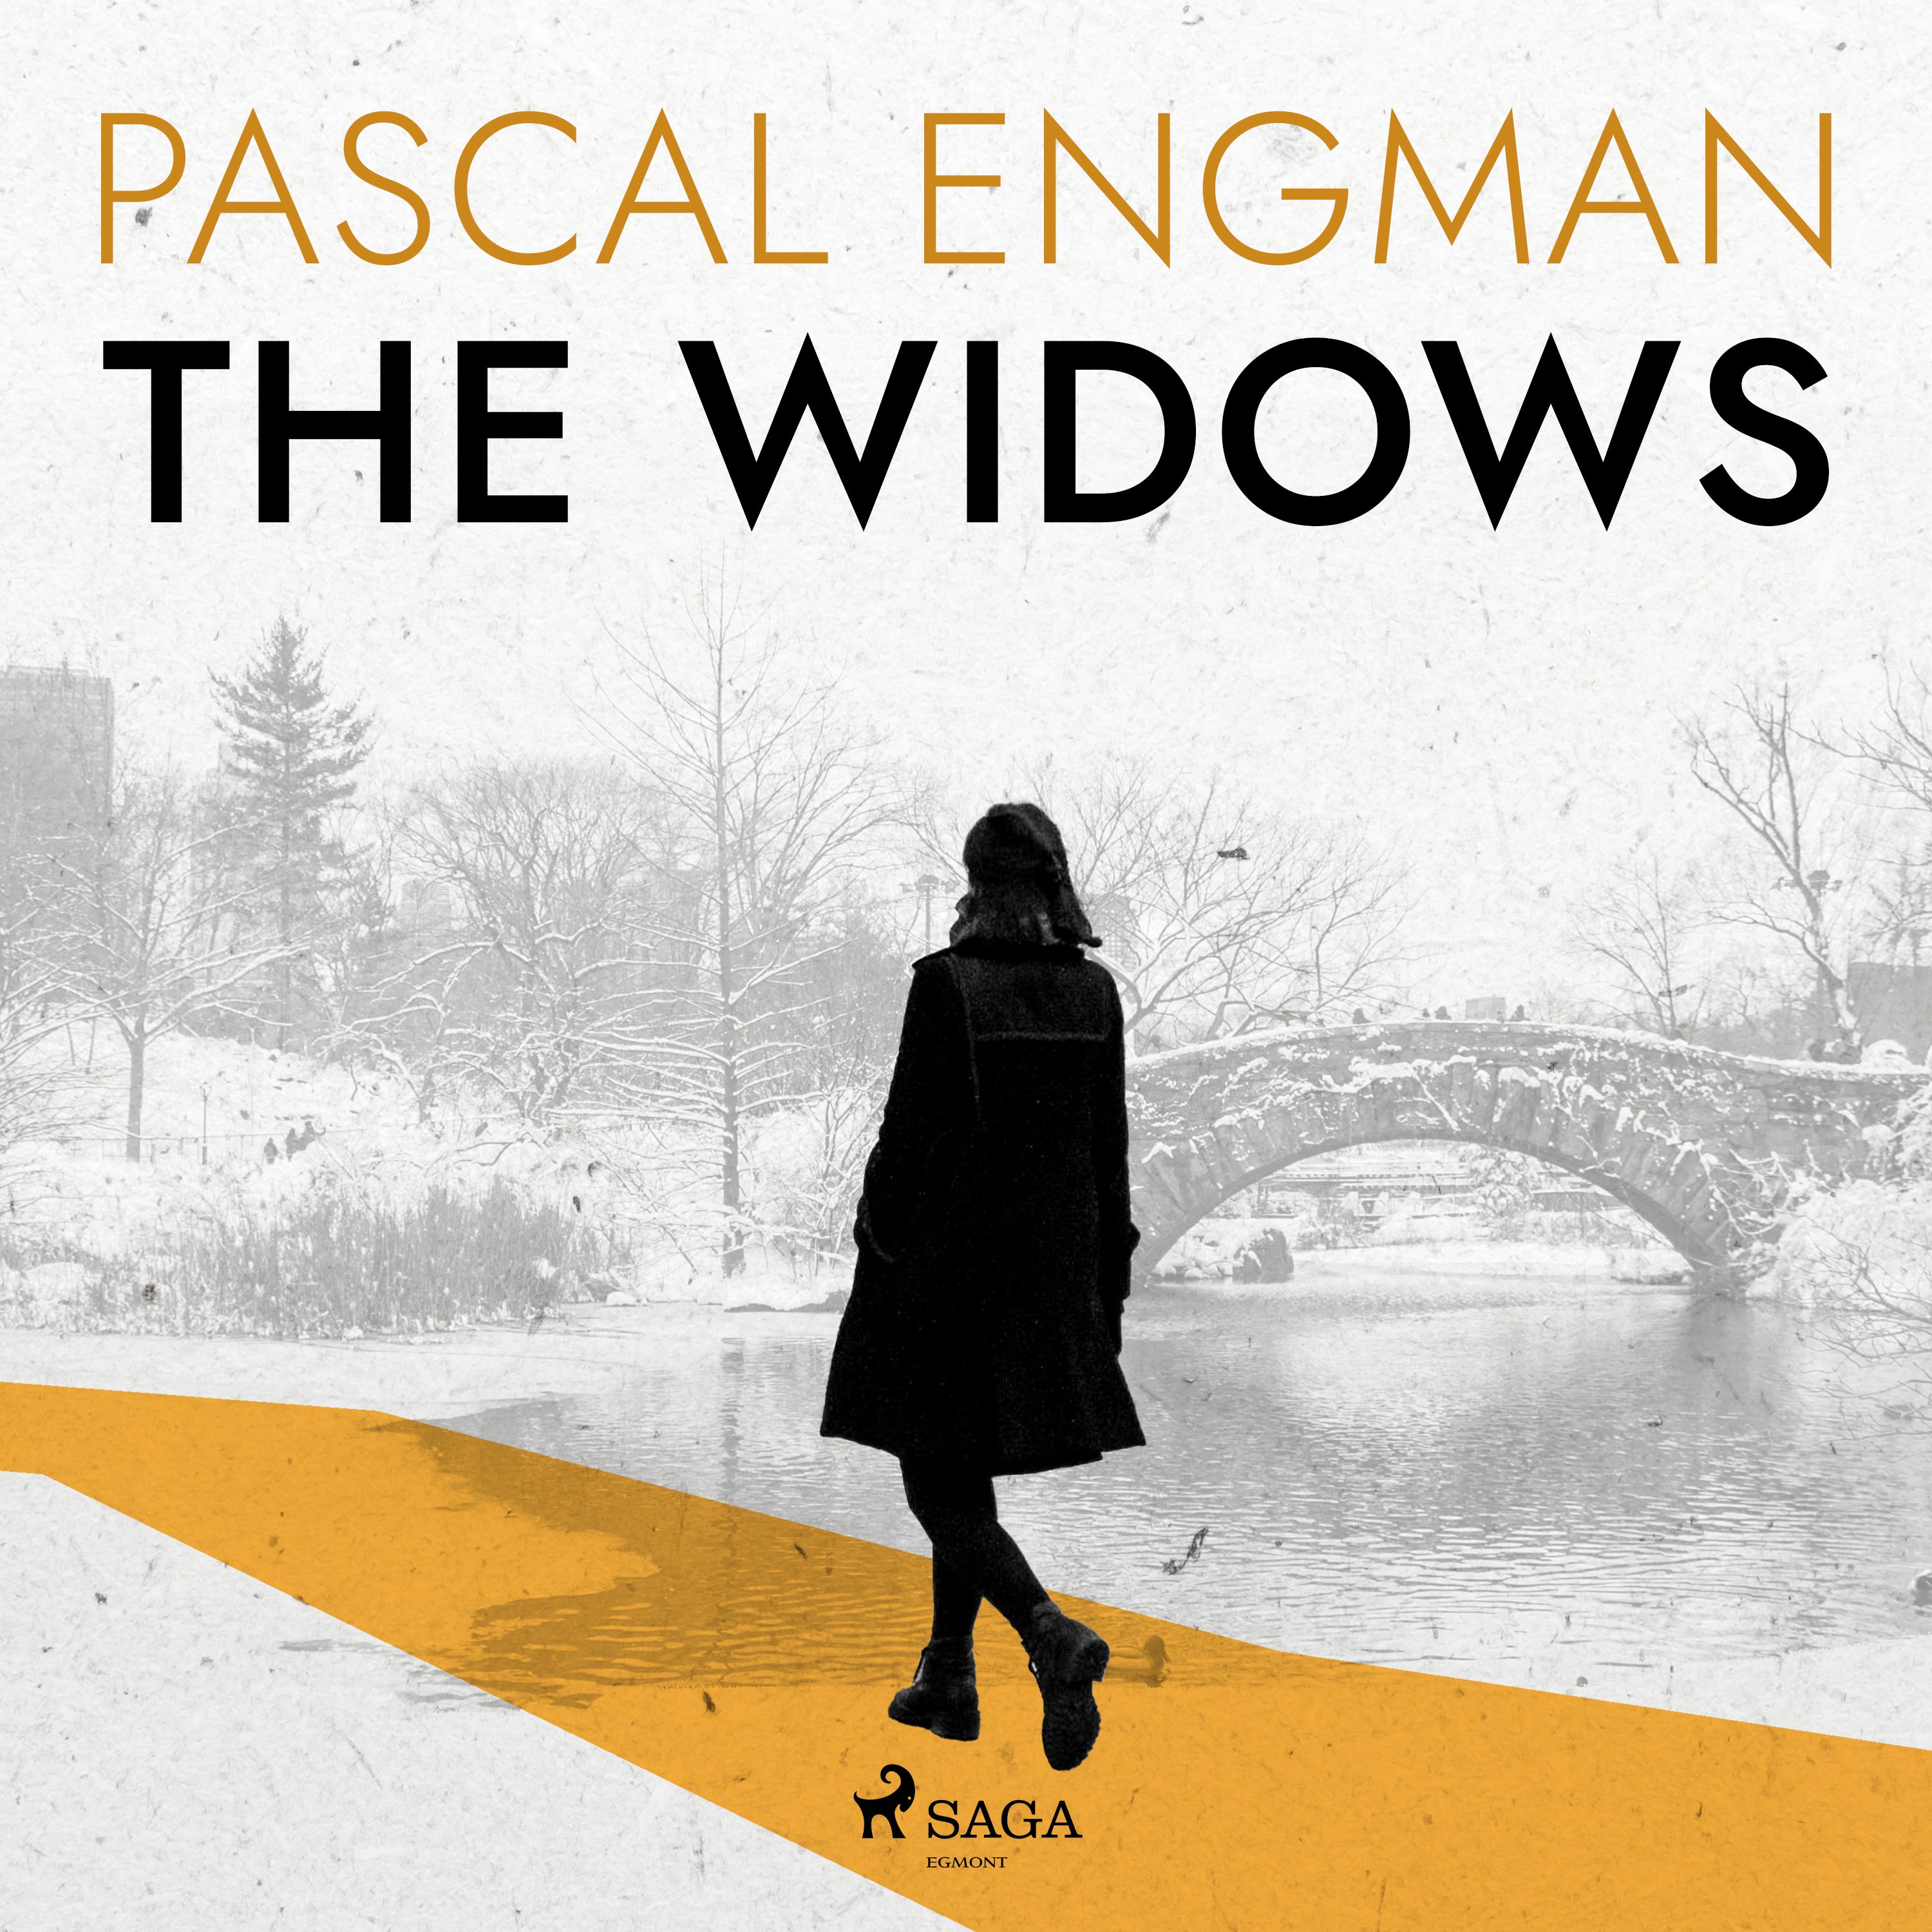 The Widows, lydbog af Pascal Engman